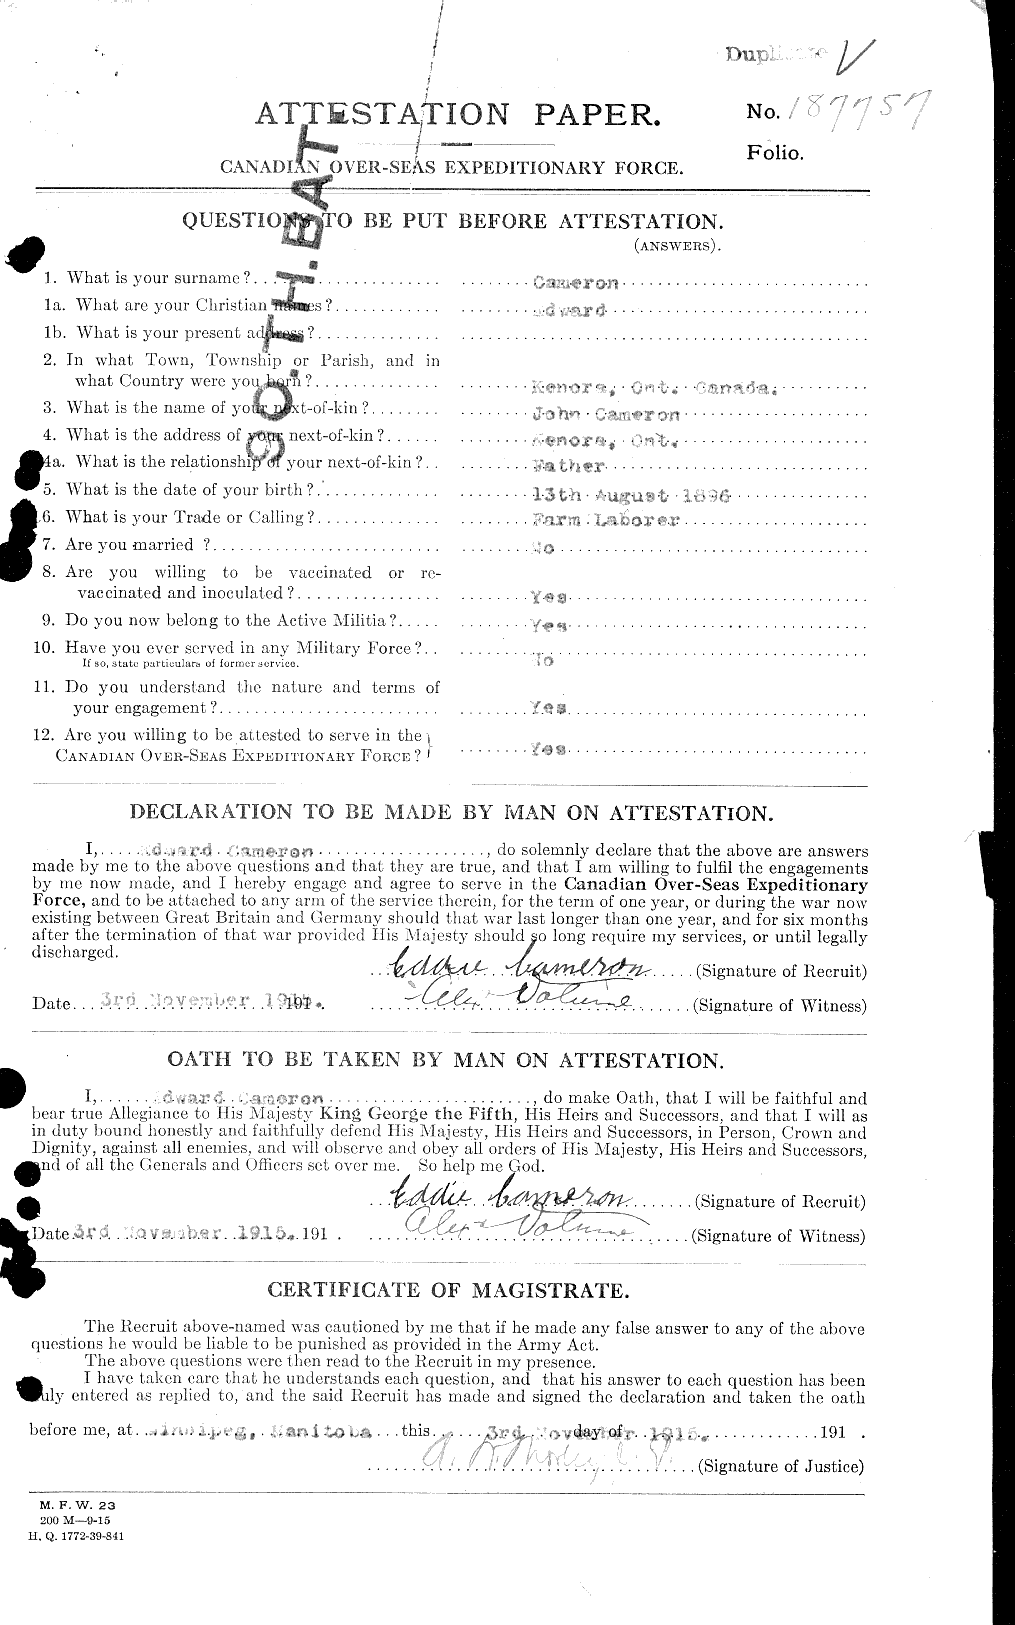 Dossiers du Personnel de la Première Guerre mondiale - CEC 006521a